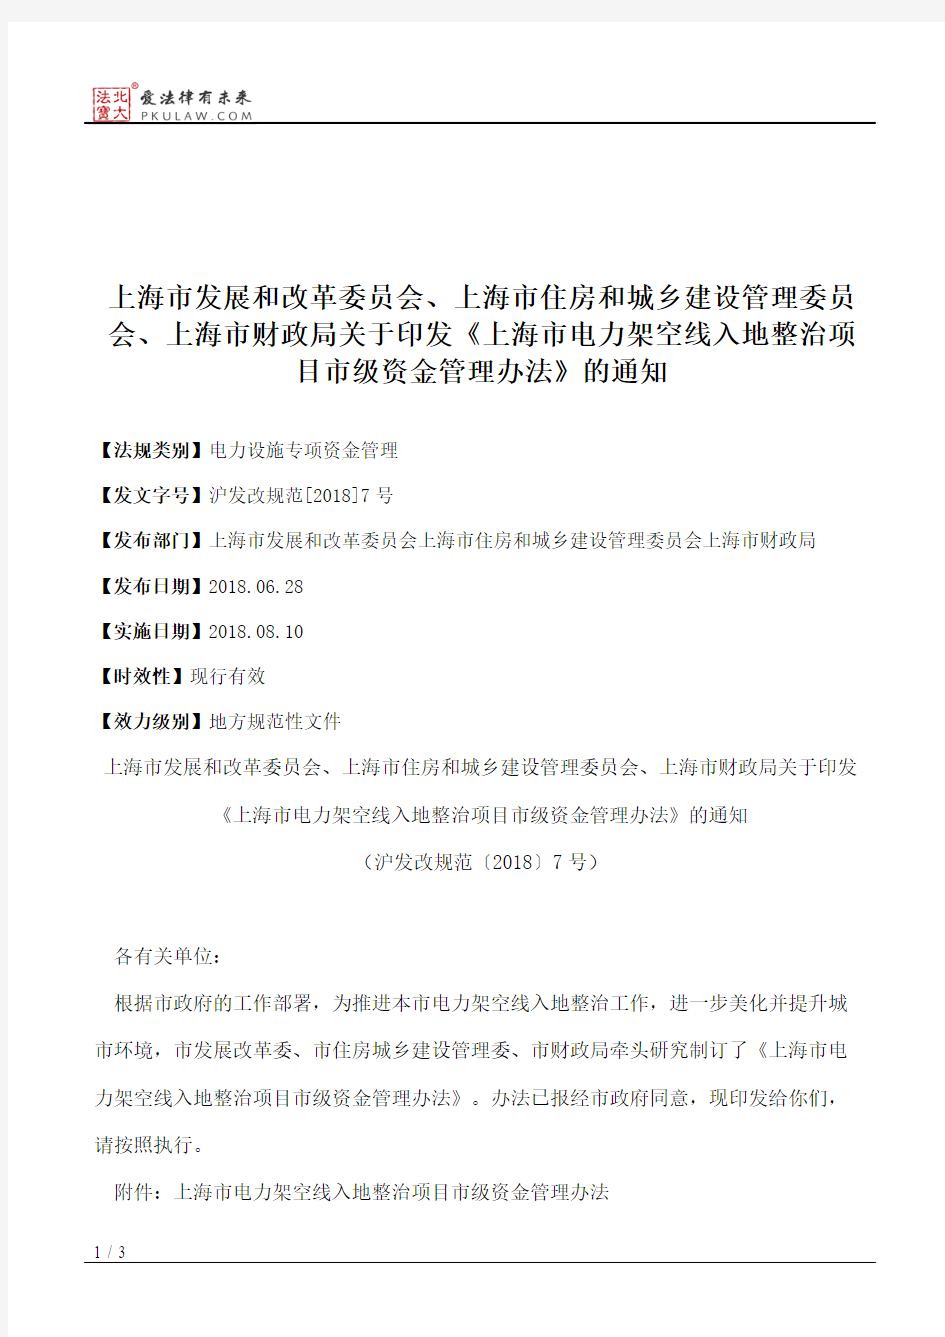 上海市发展和改革委员会、上海市住房和城乡建设管理委员会、上海